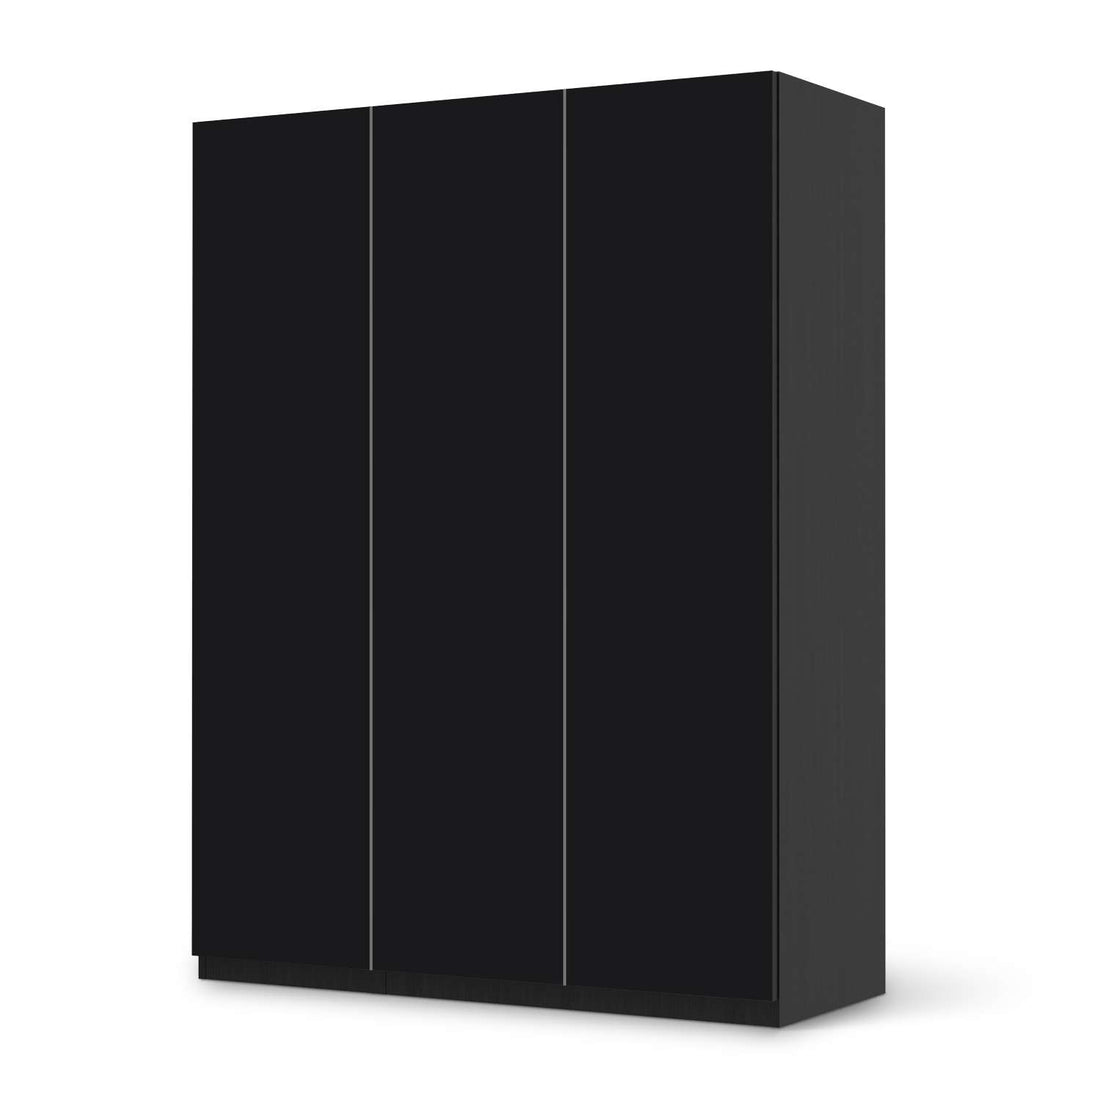 Folie für Möbel Schwarz - IKEA Pax Schrank 201 cm Höhe - 3 Türen - schwarz